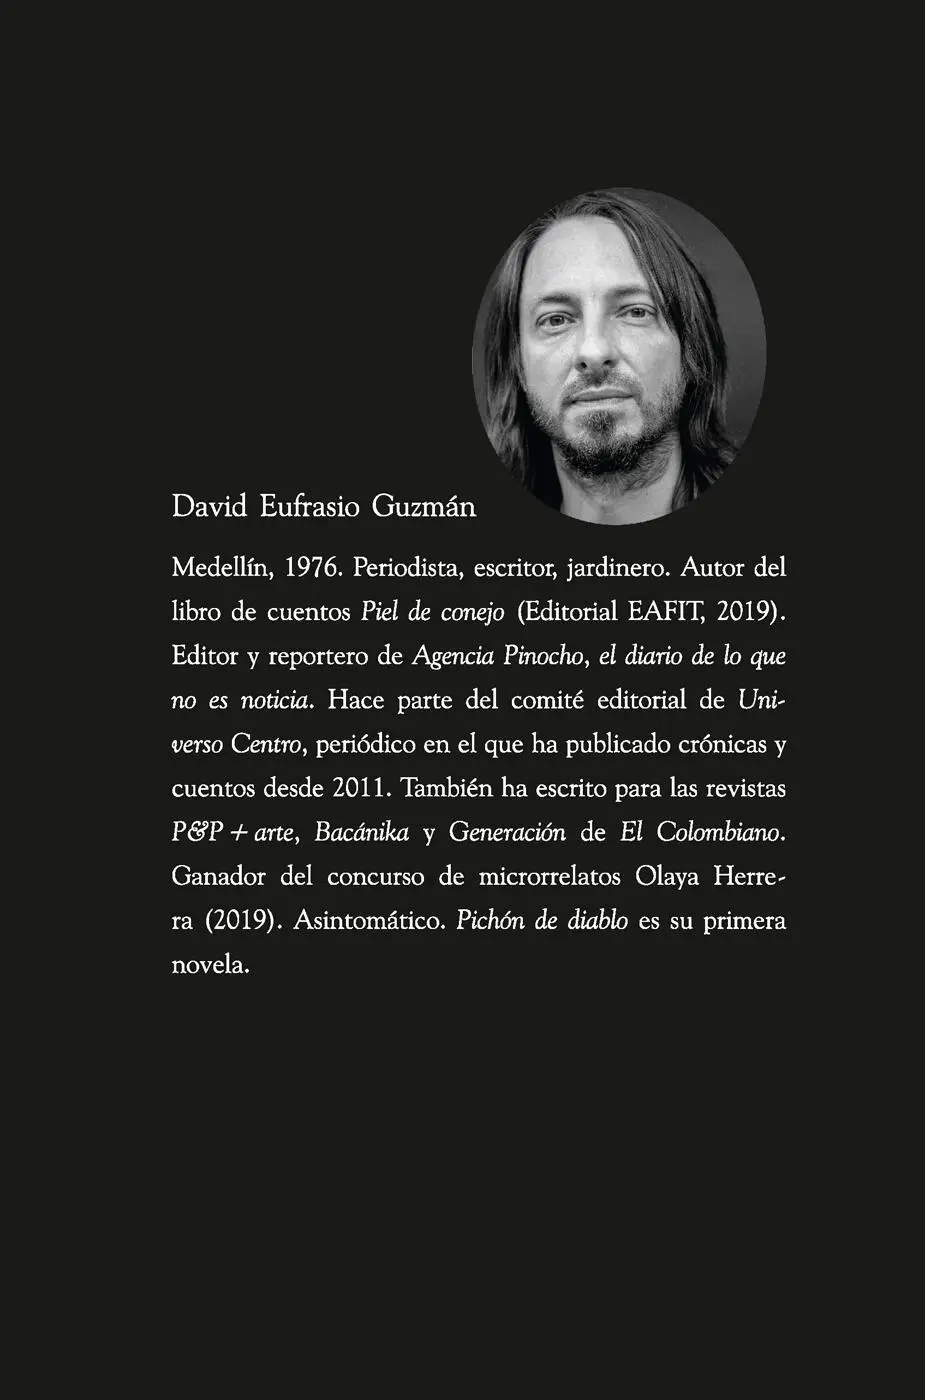 Guzmán David Eufrasio Pichón de diablo David Eufrasi - фото 1